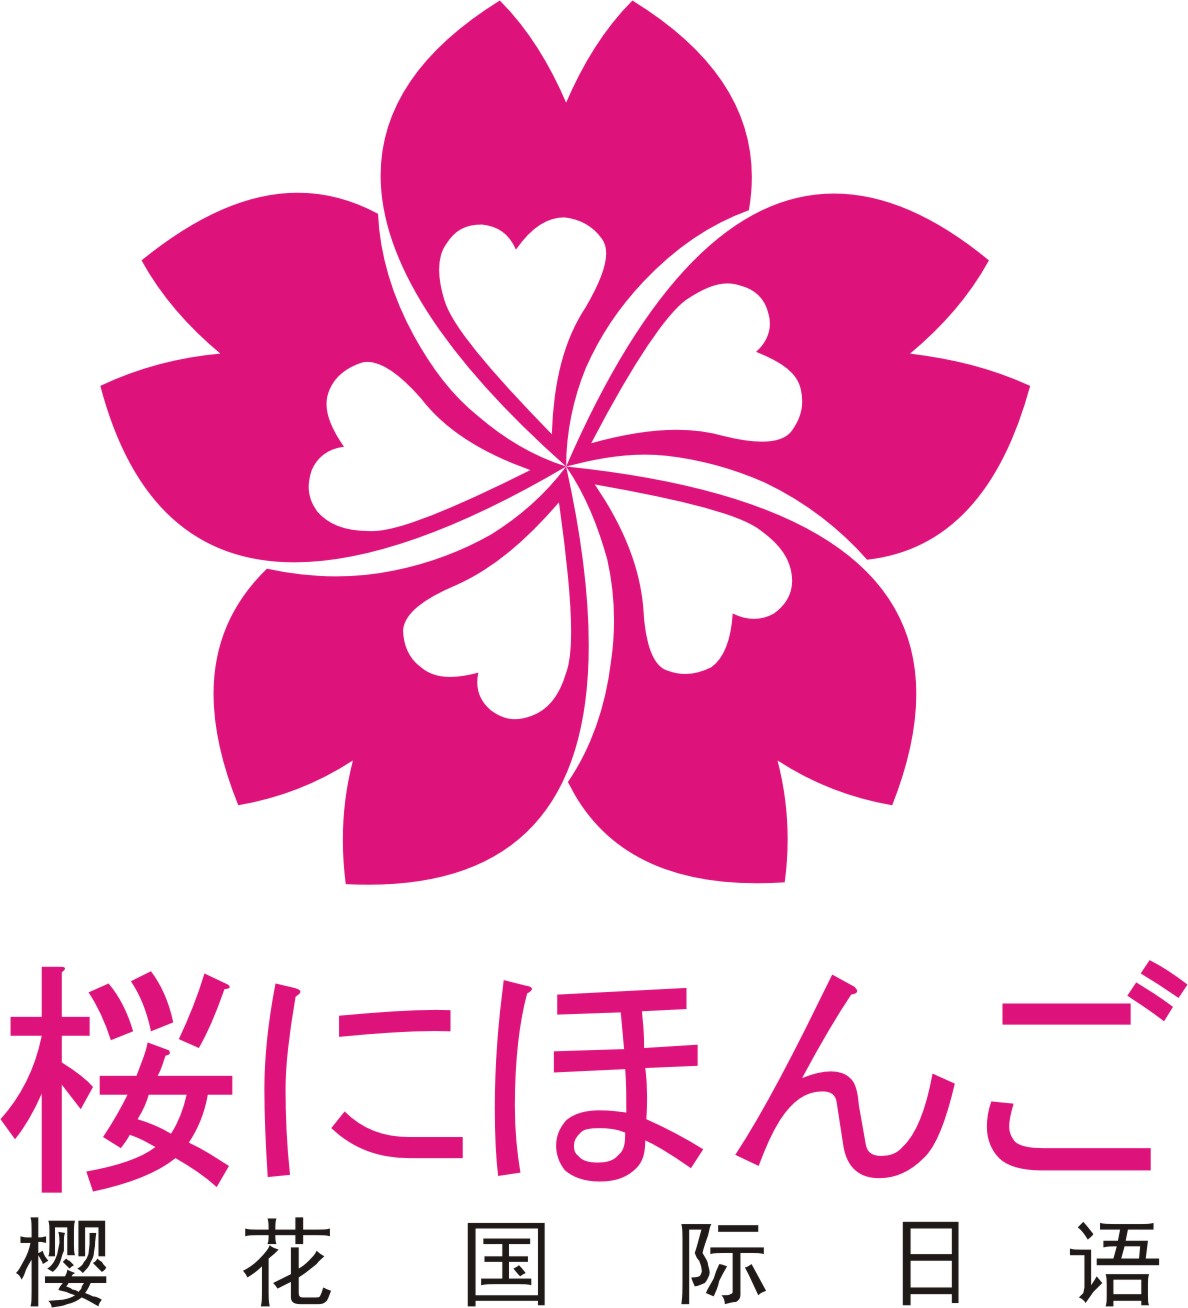 樱花用日语怎么写,又怎么读?